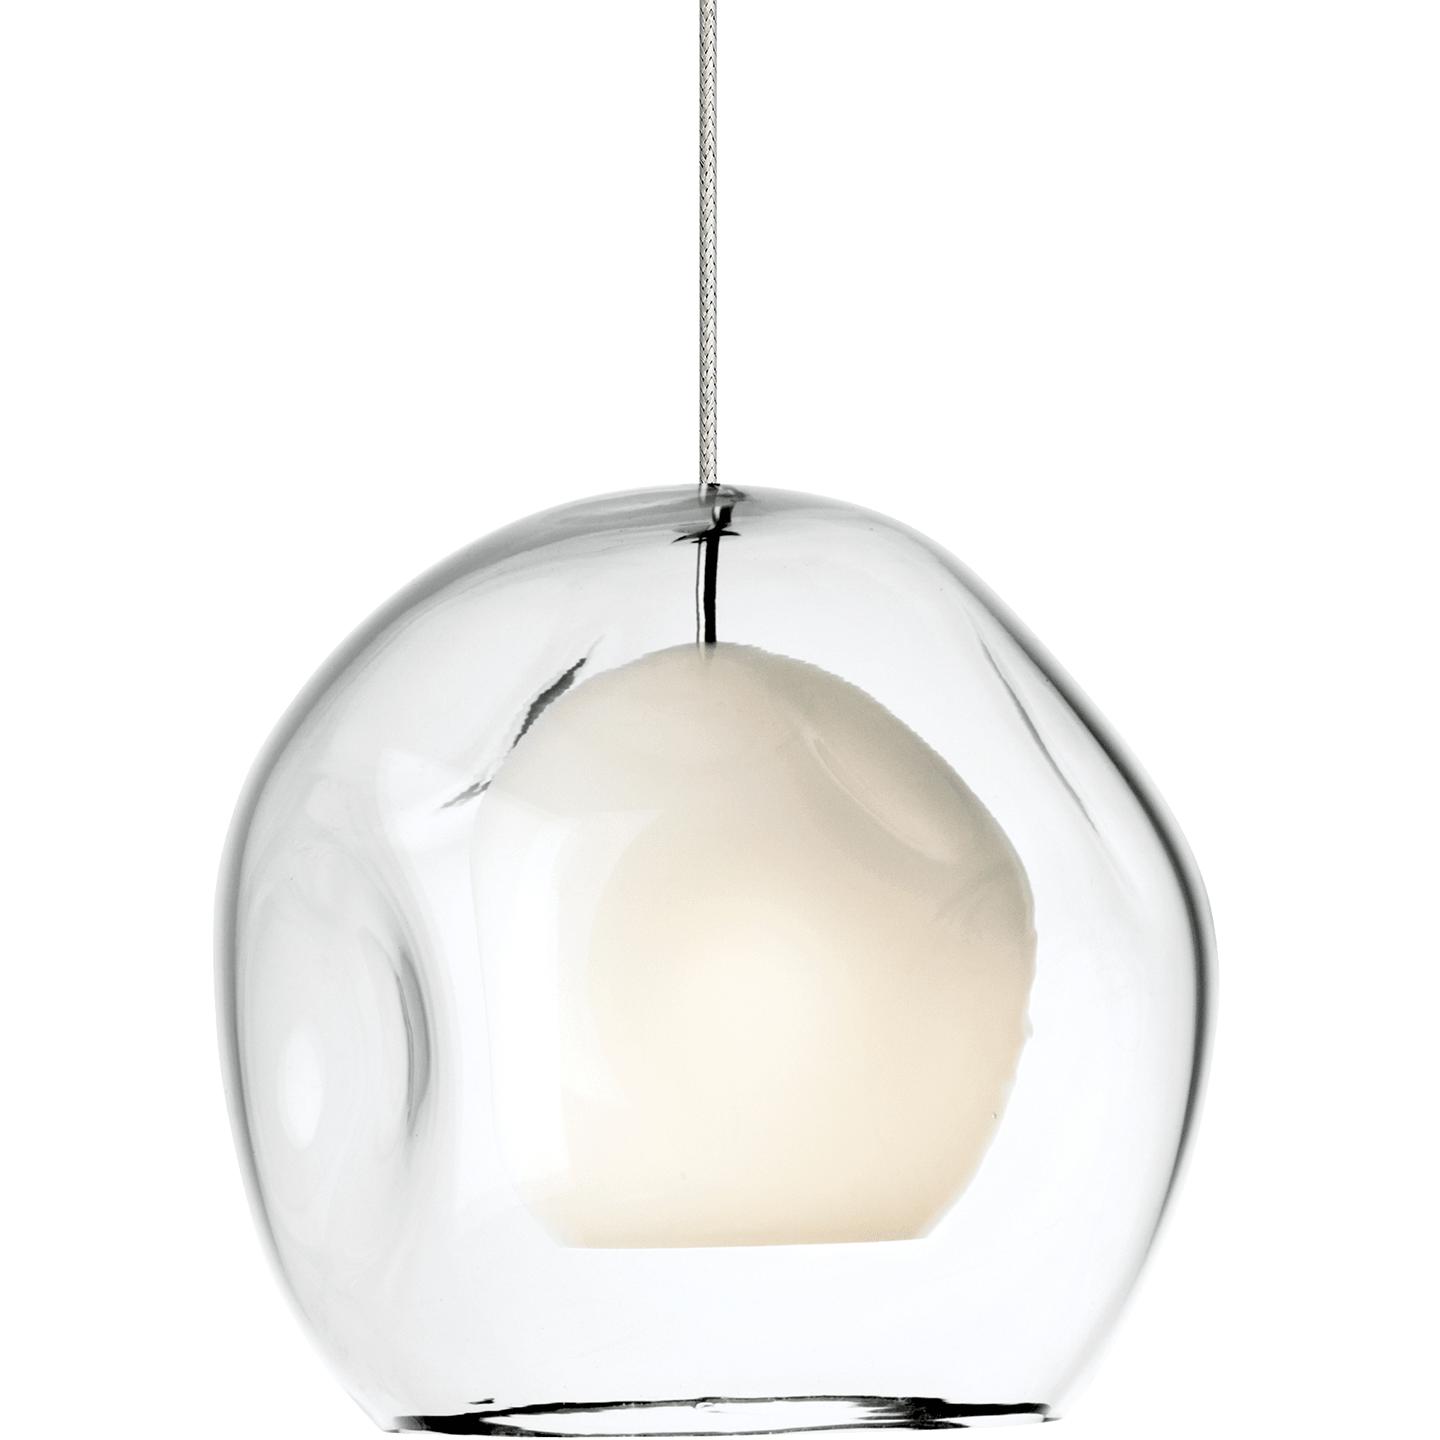 Купить Подвесной светильник Mini Jasper Pendant в интернет-магазине roooms.ru